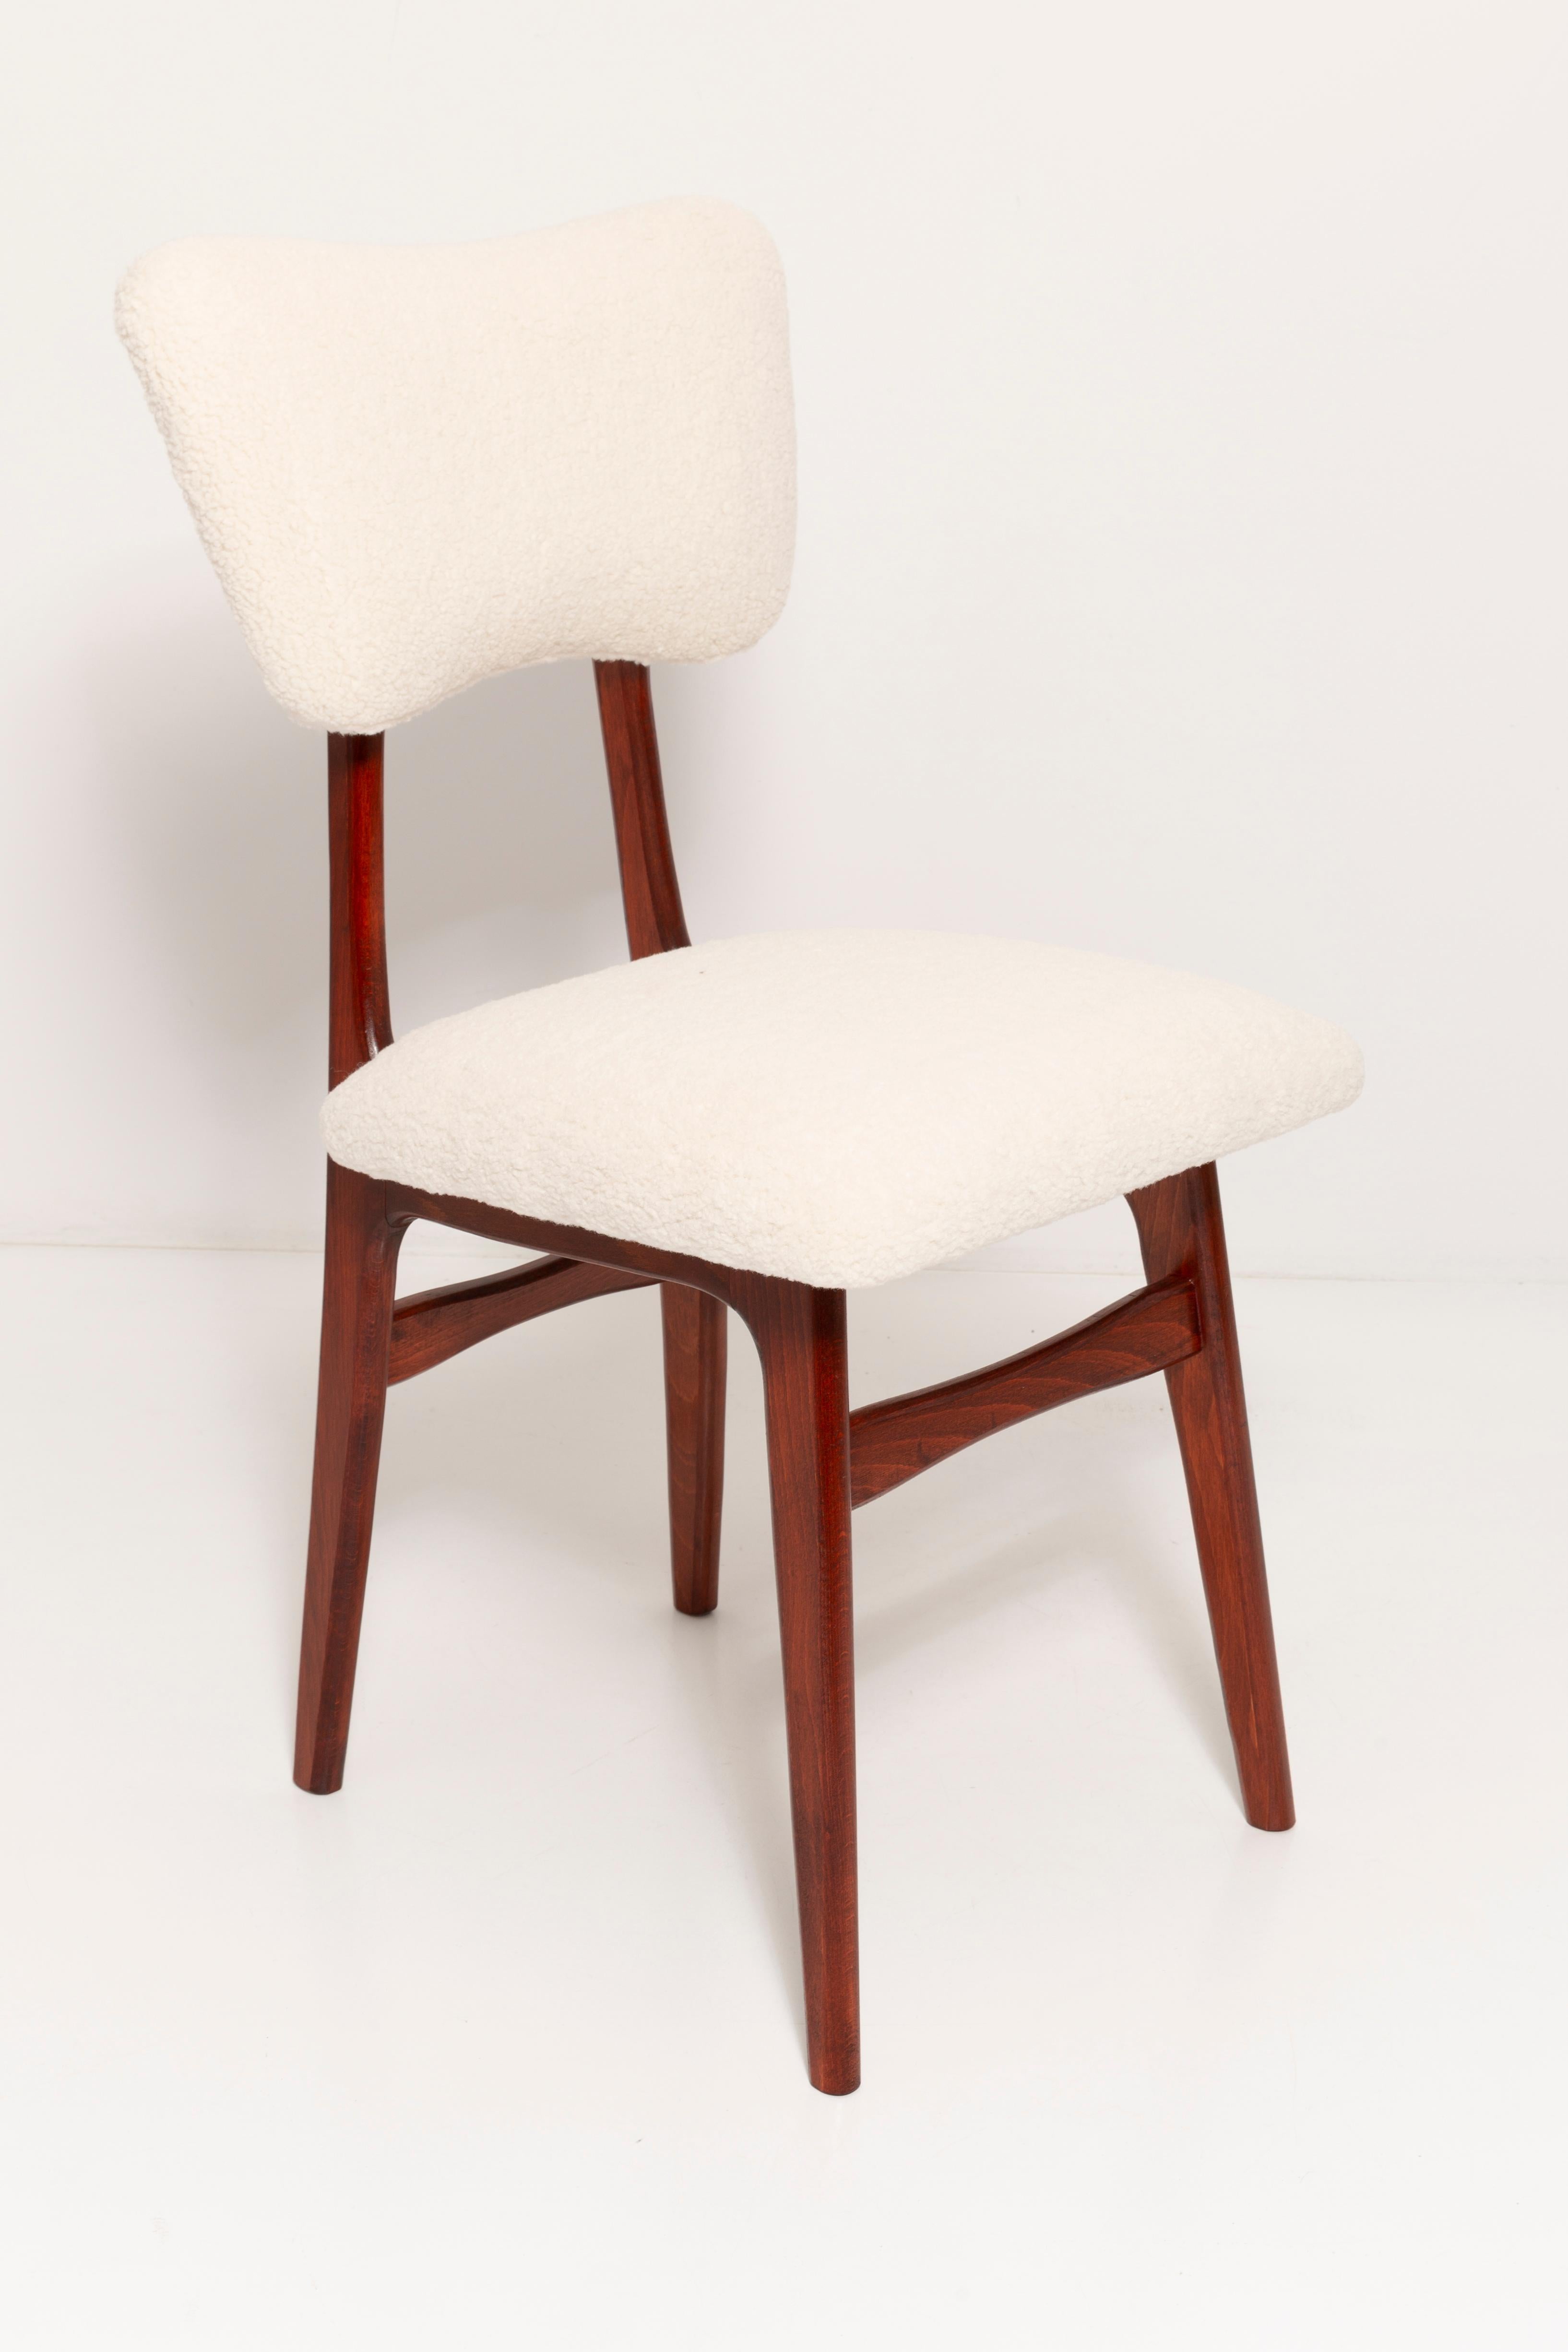 Chaises conçues par le professeur Rajmund Halas. Fabriqué en bois de hêtre. La chaise a été entièrement rénovée au niveau du rembourrage ; les boiseries ont été rafraîchies et peintes en laque de cerisier. L'assise et le dossier sont habillés d'un